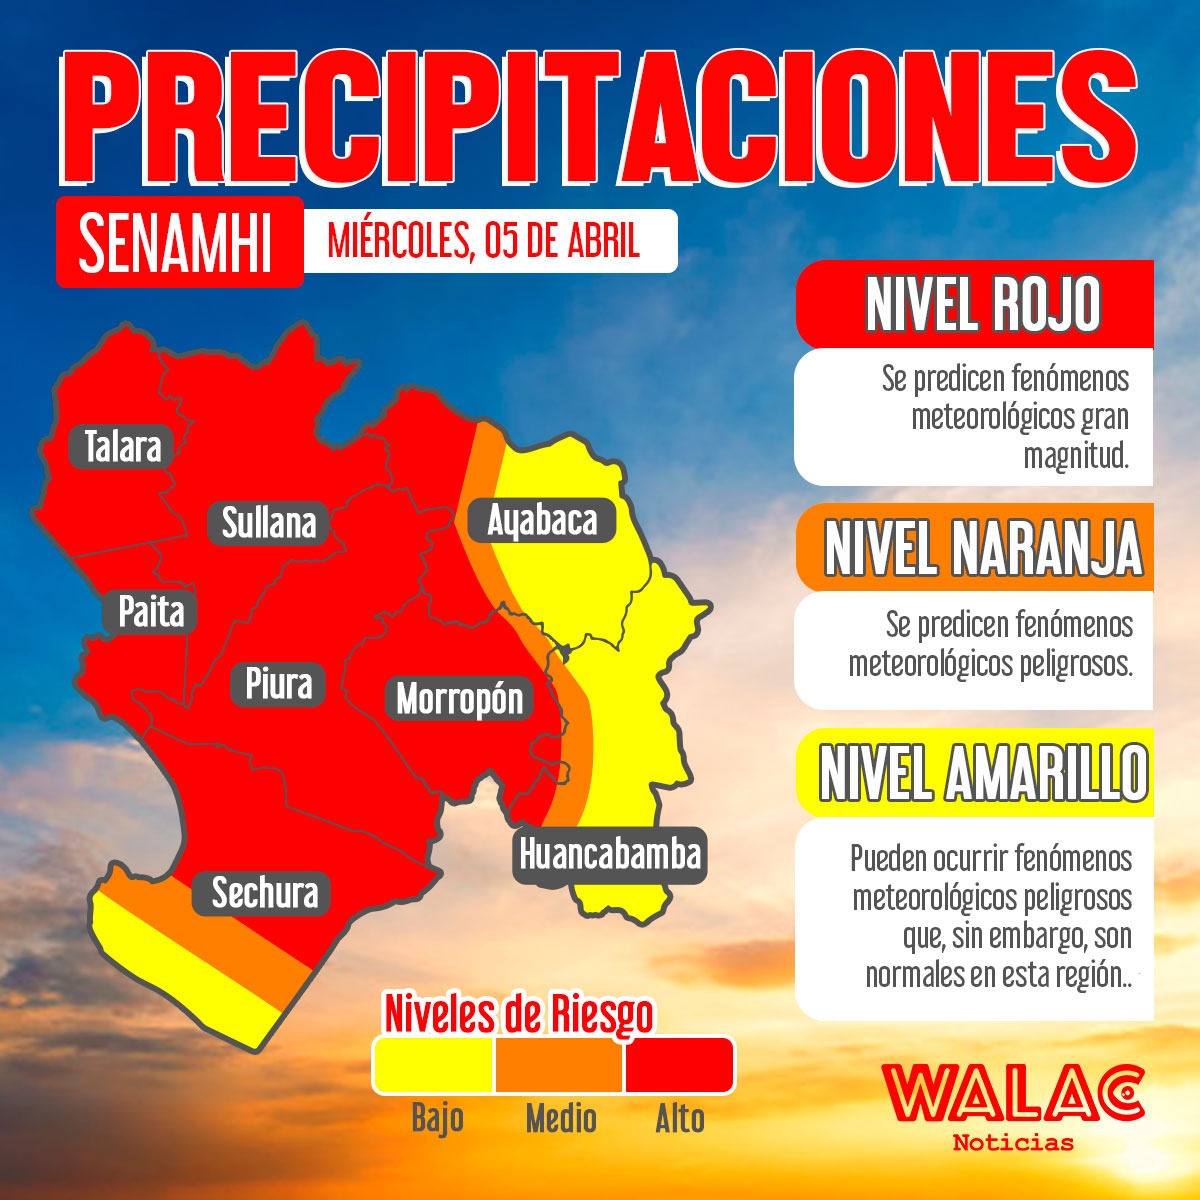 Lluvias de moderada a extrema intensidad se presentarán hasta el jueves 06 de abril. / Gráfica: Walac Noticias / Javier Villegas. 